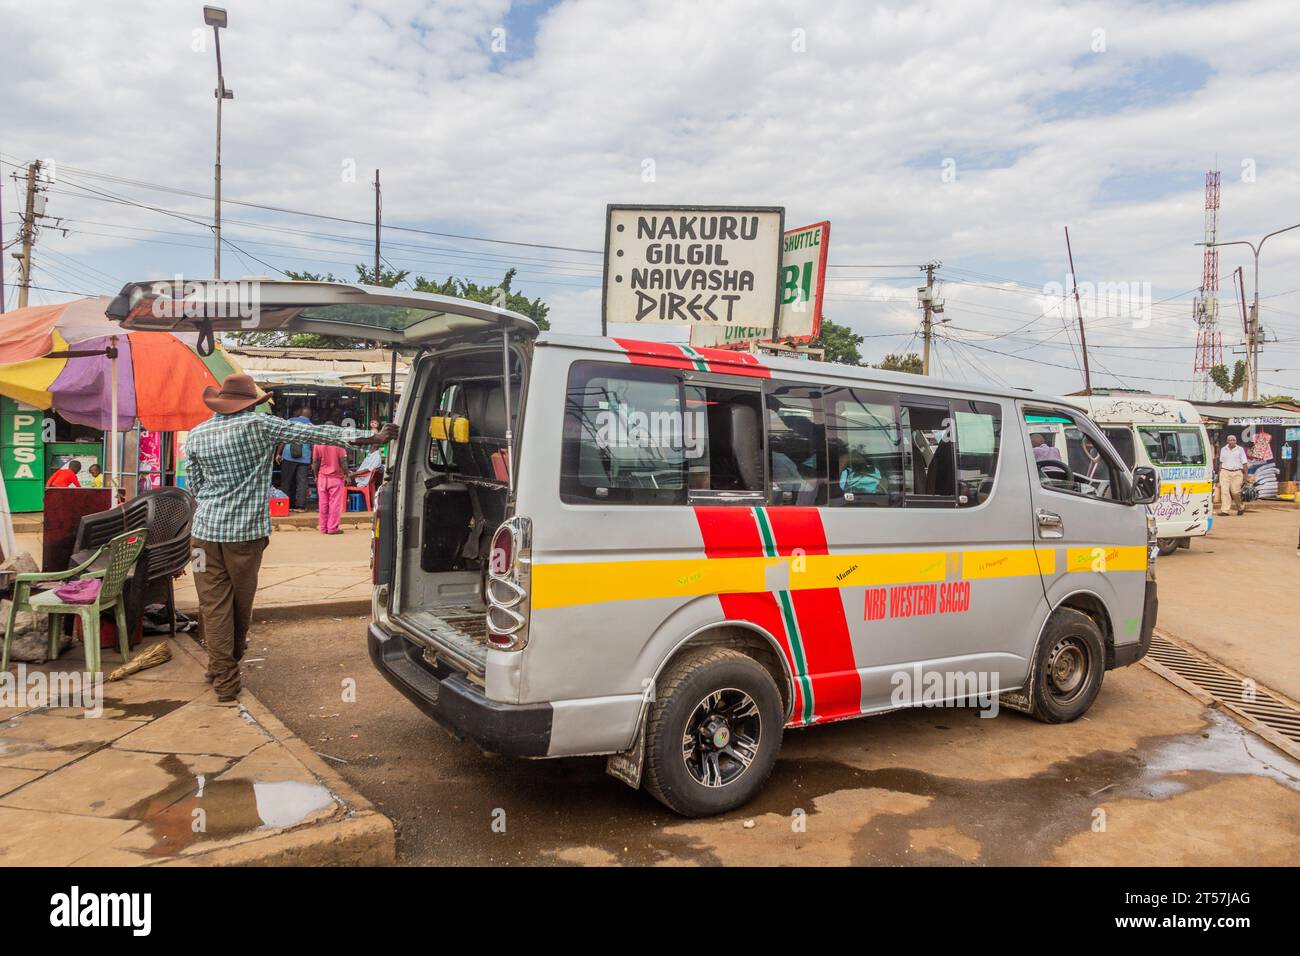 KISUMU, KENIA - 22. FEBRUAR 2020: Matatu (Minibus) an einem Stand in Kisumu, Kenia Stockfoto